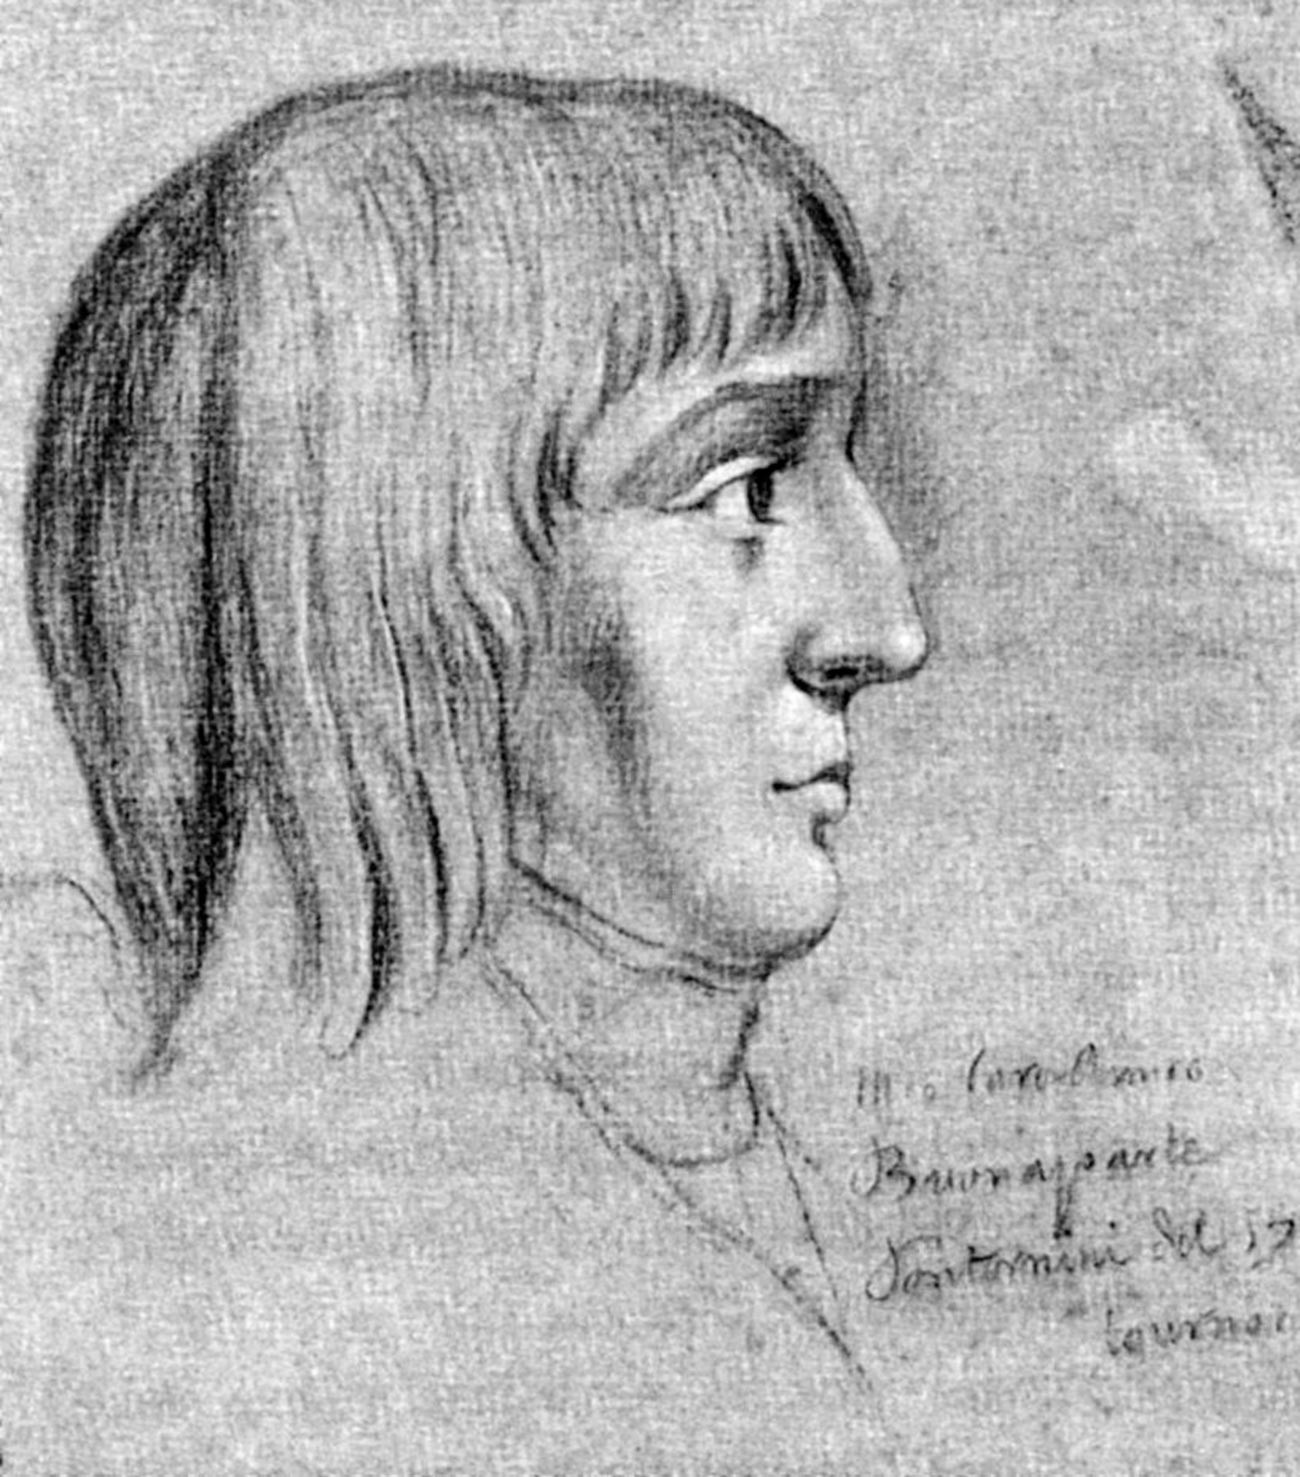 Napoleon Bonaparte (1769-1821) pri 16 letih

